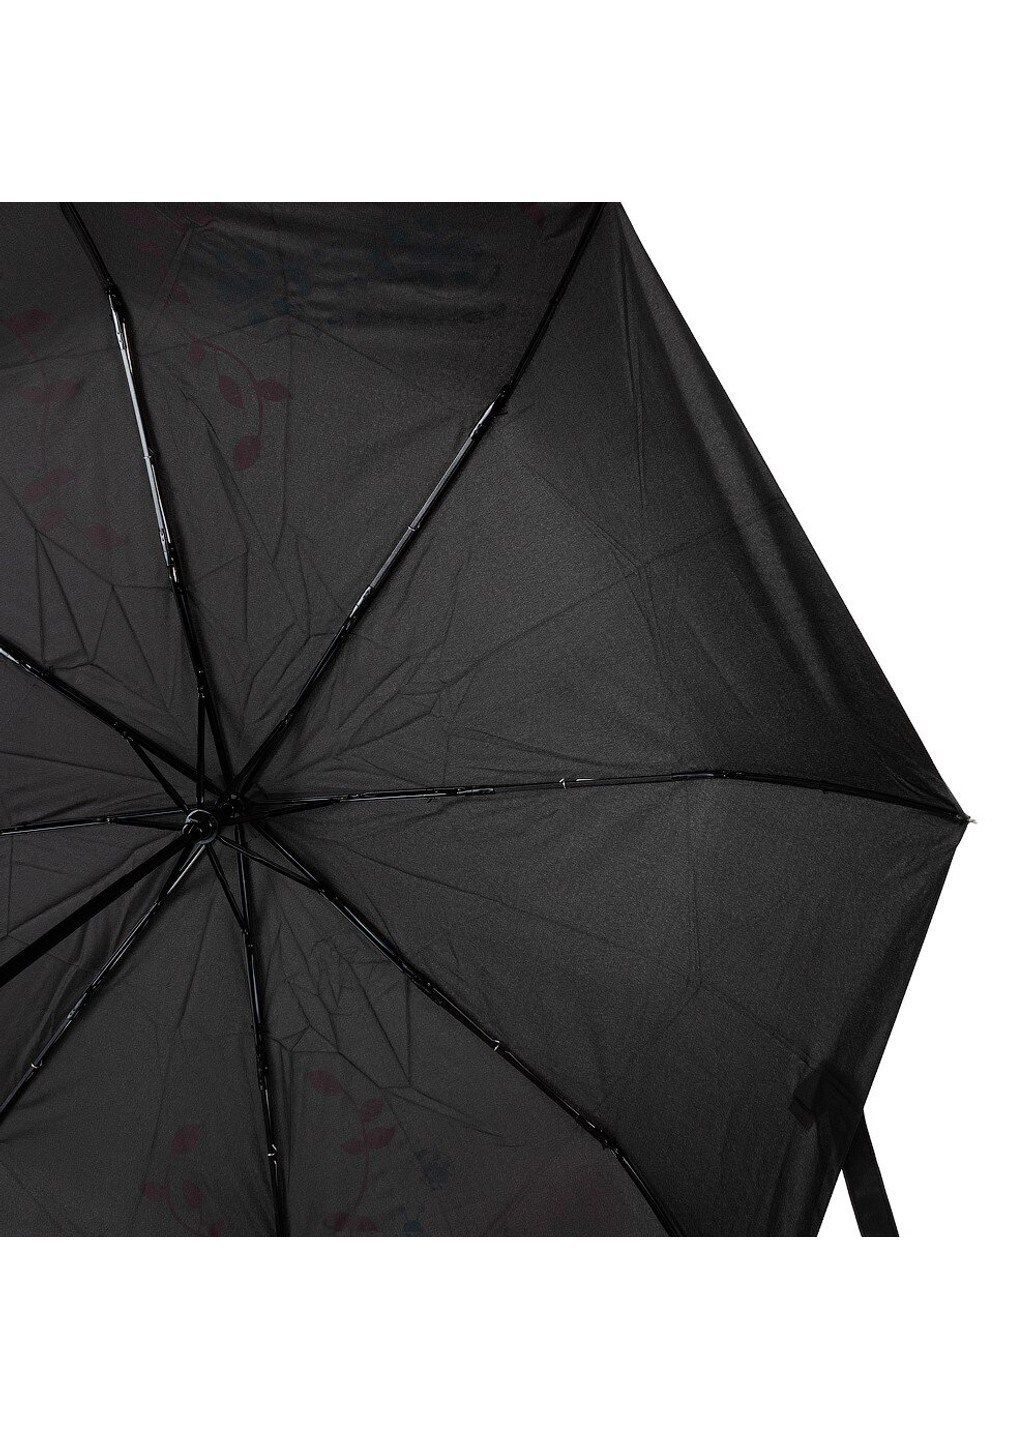 Жіноча механічна парасолька hdue-163-2 H.DUE.O (262975847)